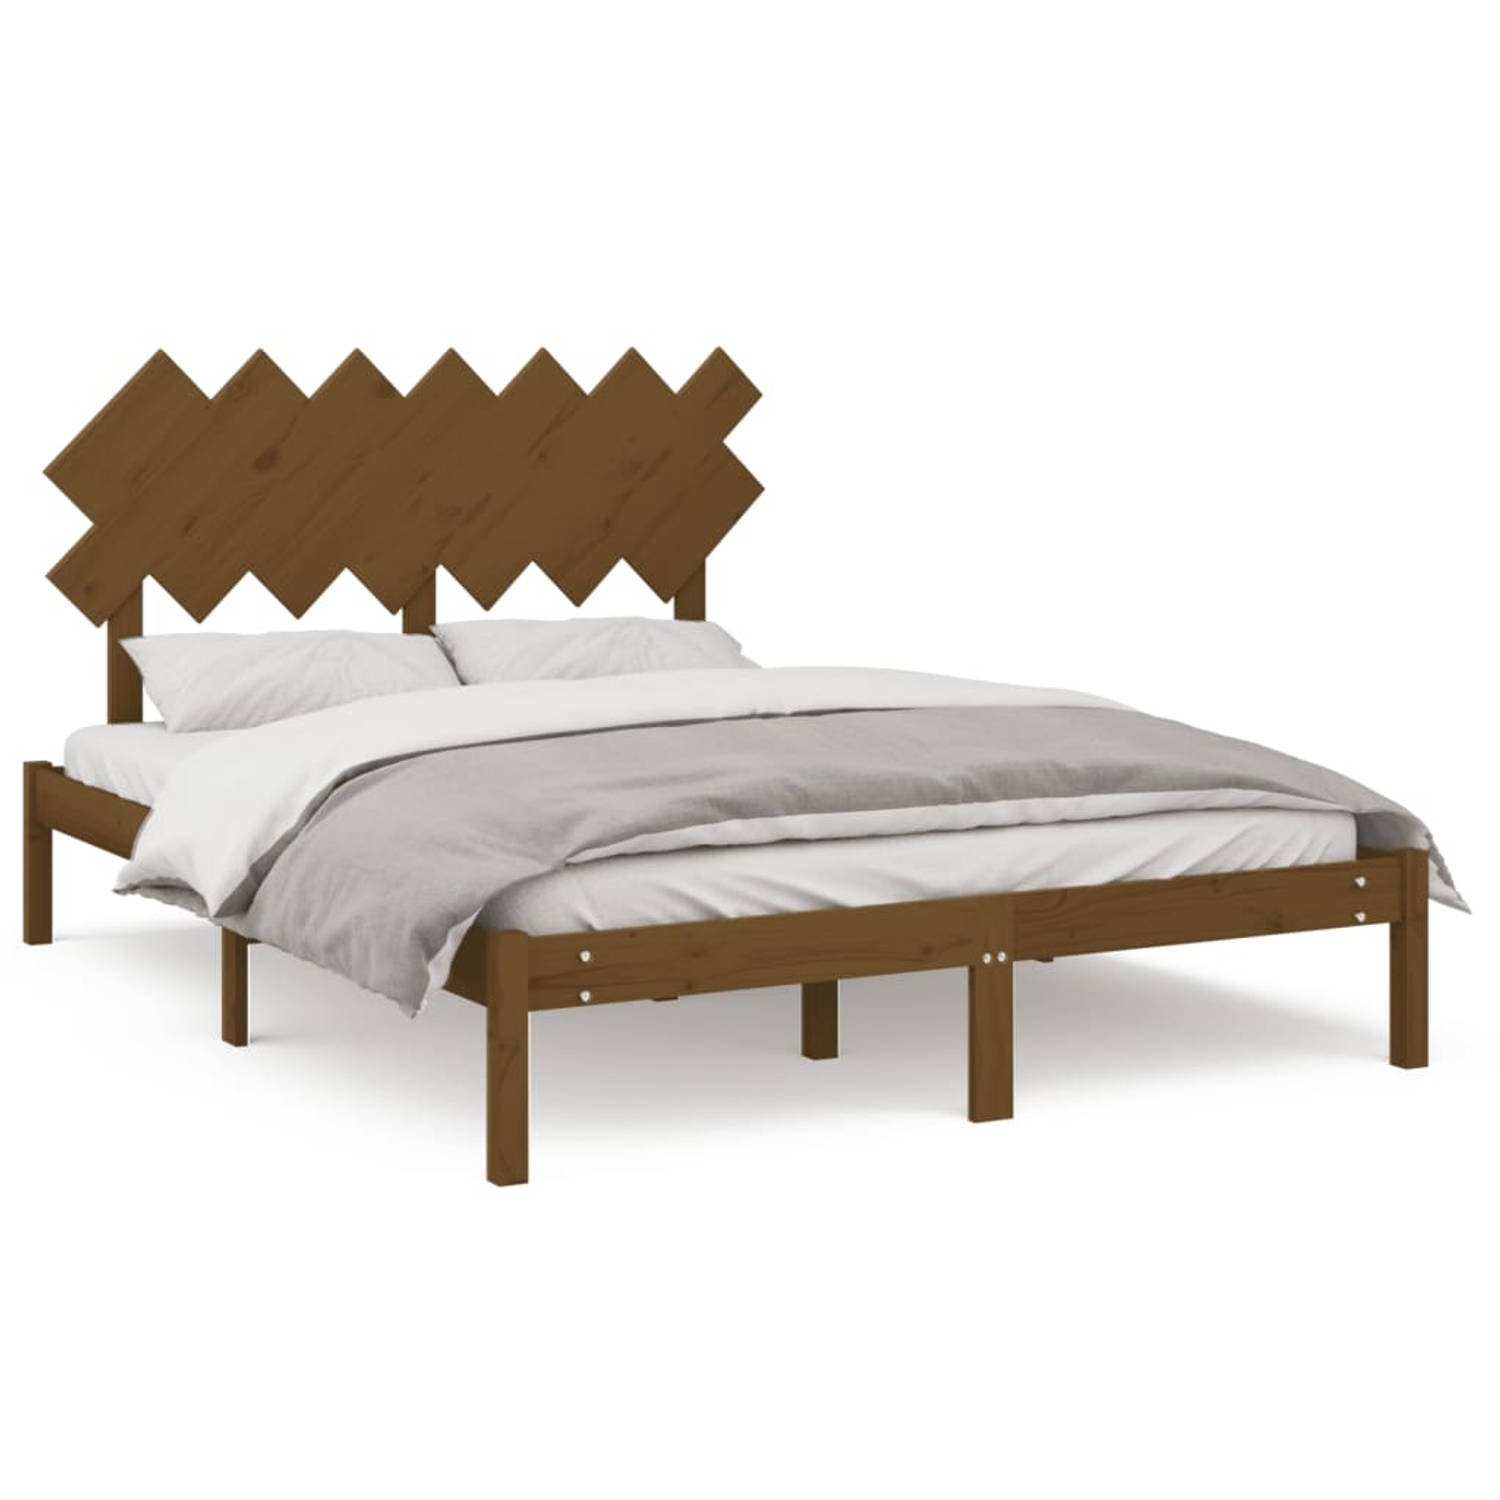 The Living Store Bedframe massief hout honingbruin 140x190 cm - Bedframe - Bedframes - Bed - Bedbodem - Ledikant - Bed Frame - Massief Houten Bedframe - Slaapmeubel - Tweepersoonsb